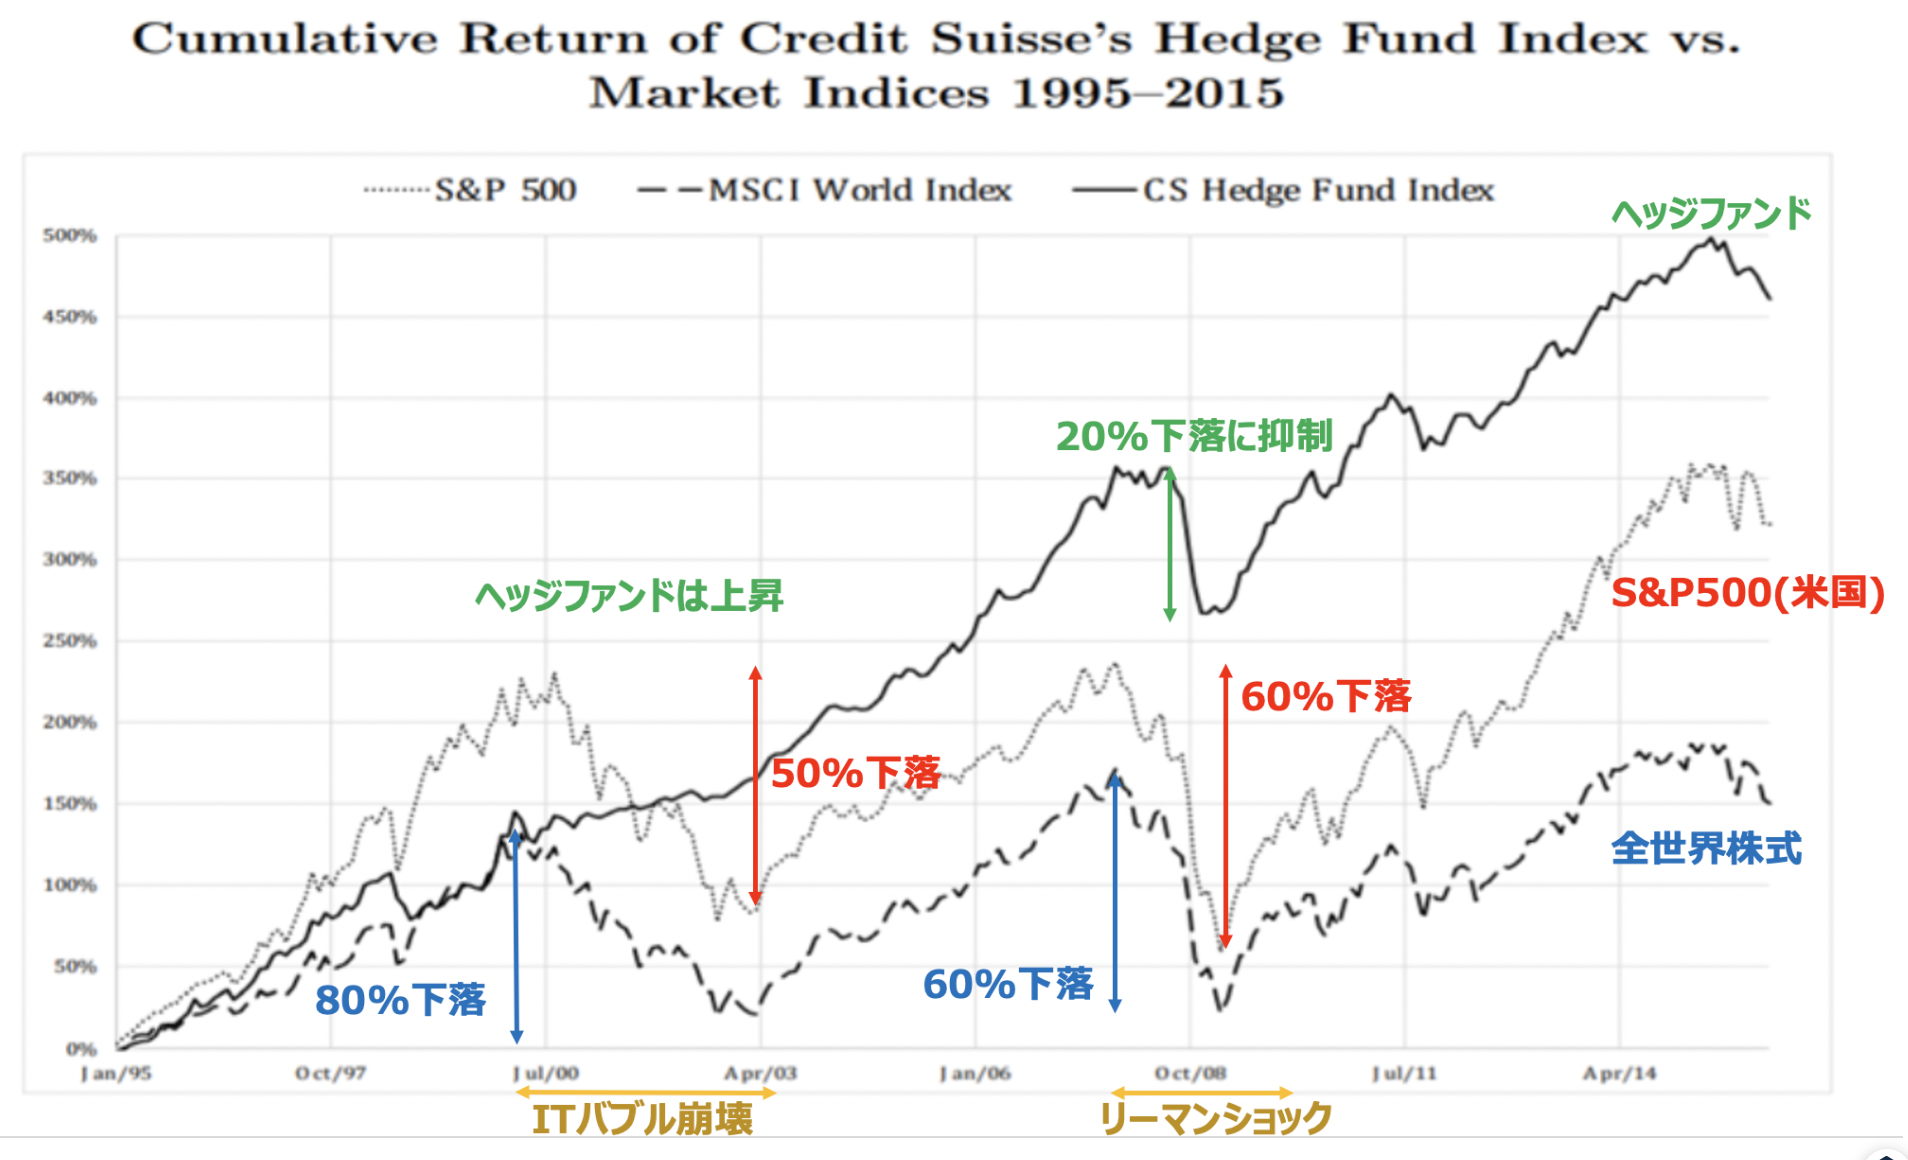 ヘッジファンドは株式市場が下落する局面でもリターンをあげて素晴らしいパフォーマンス